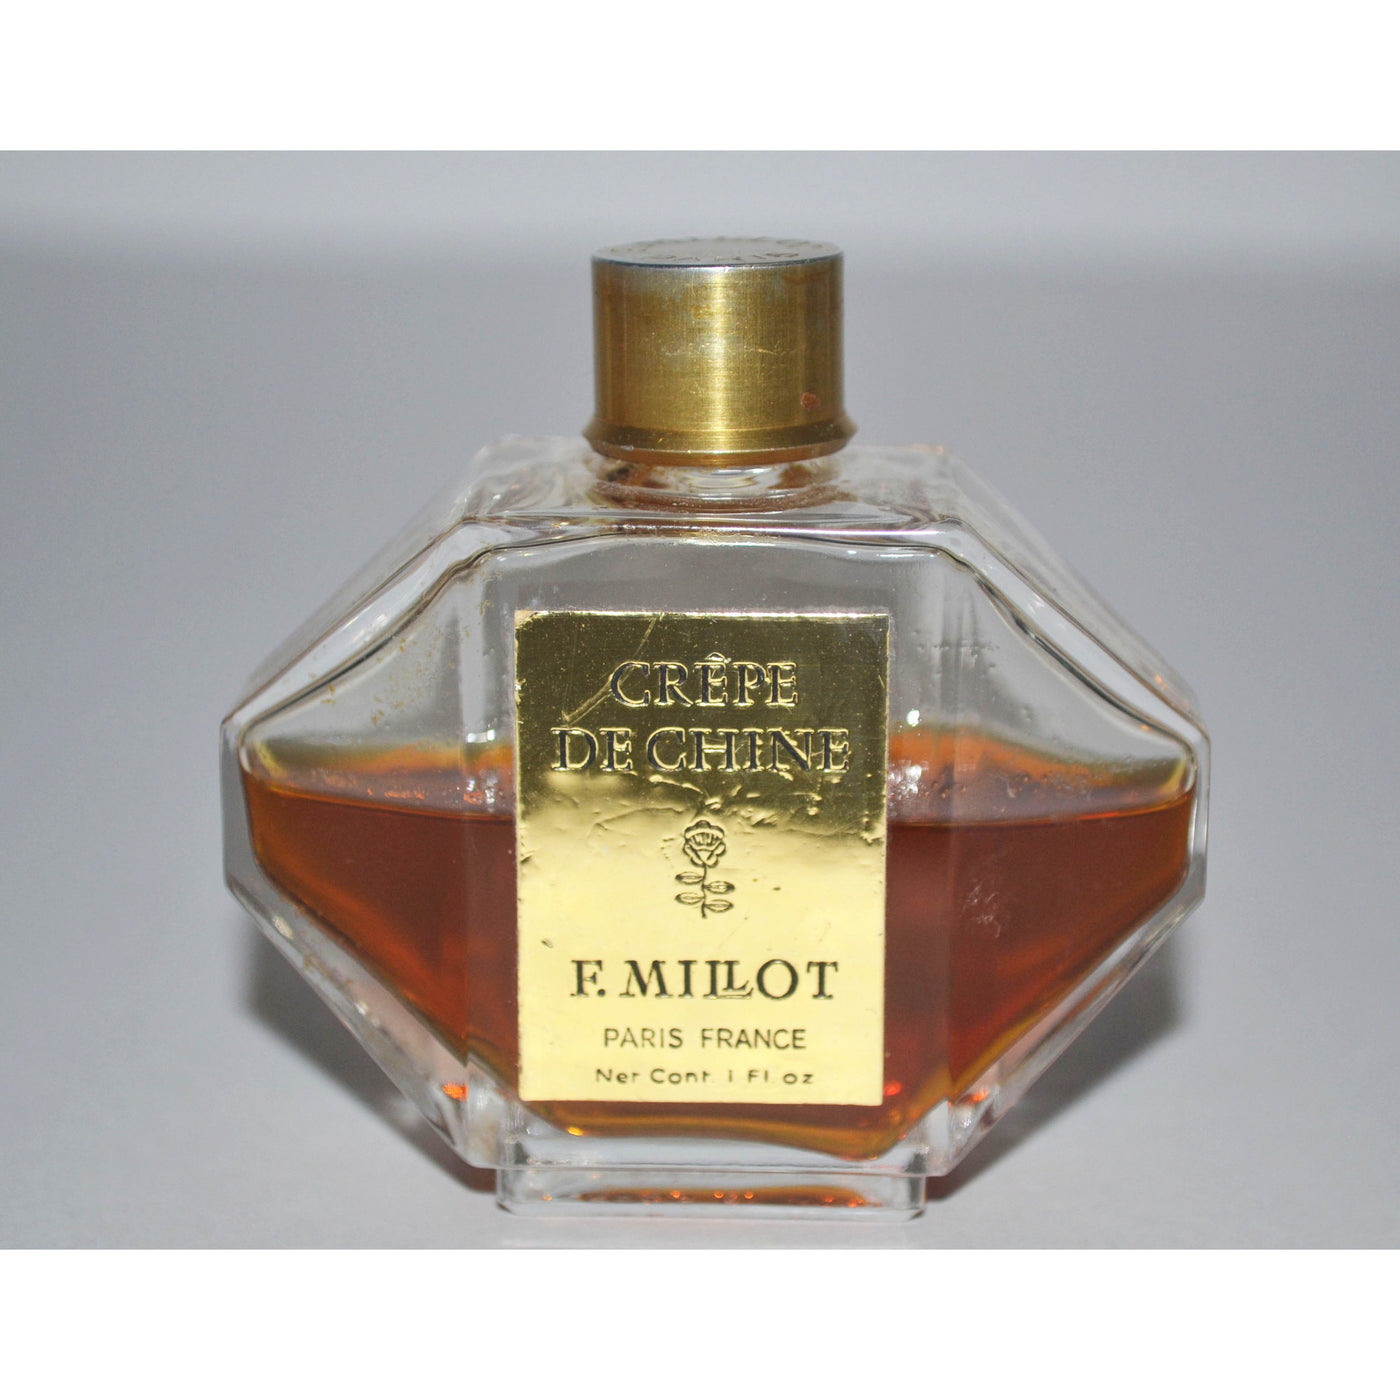 Vintage F. Millot Crepe de Chine Parfum